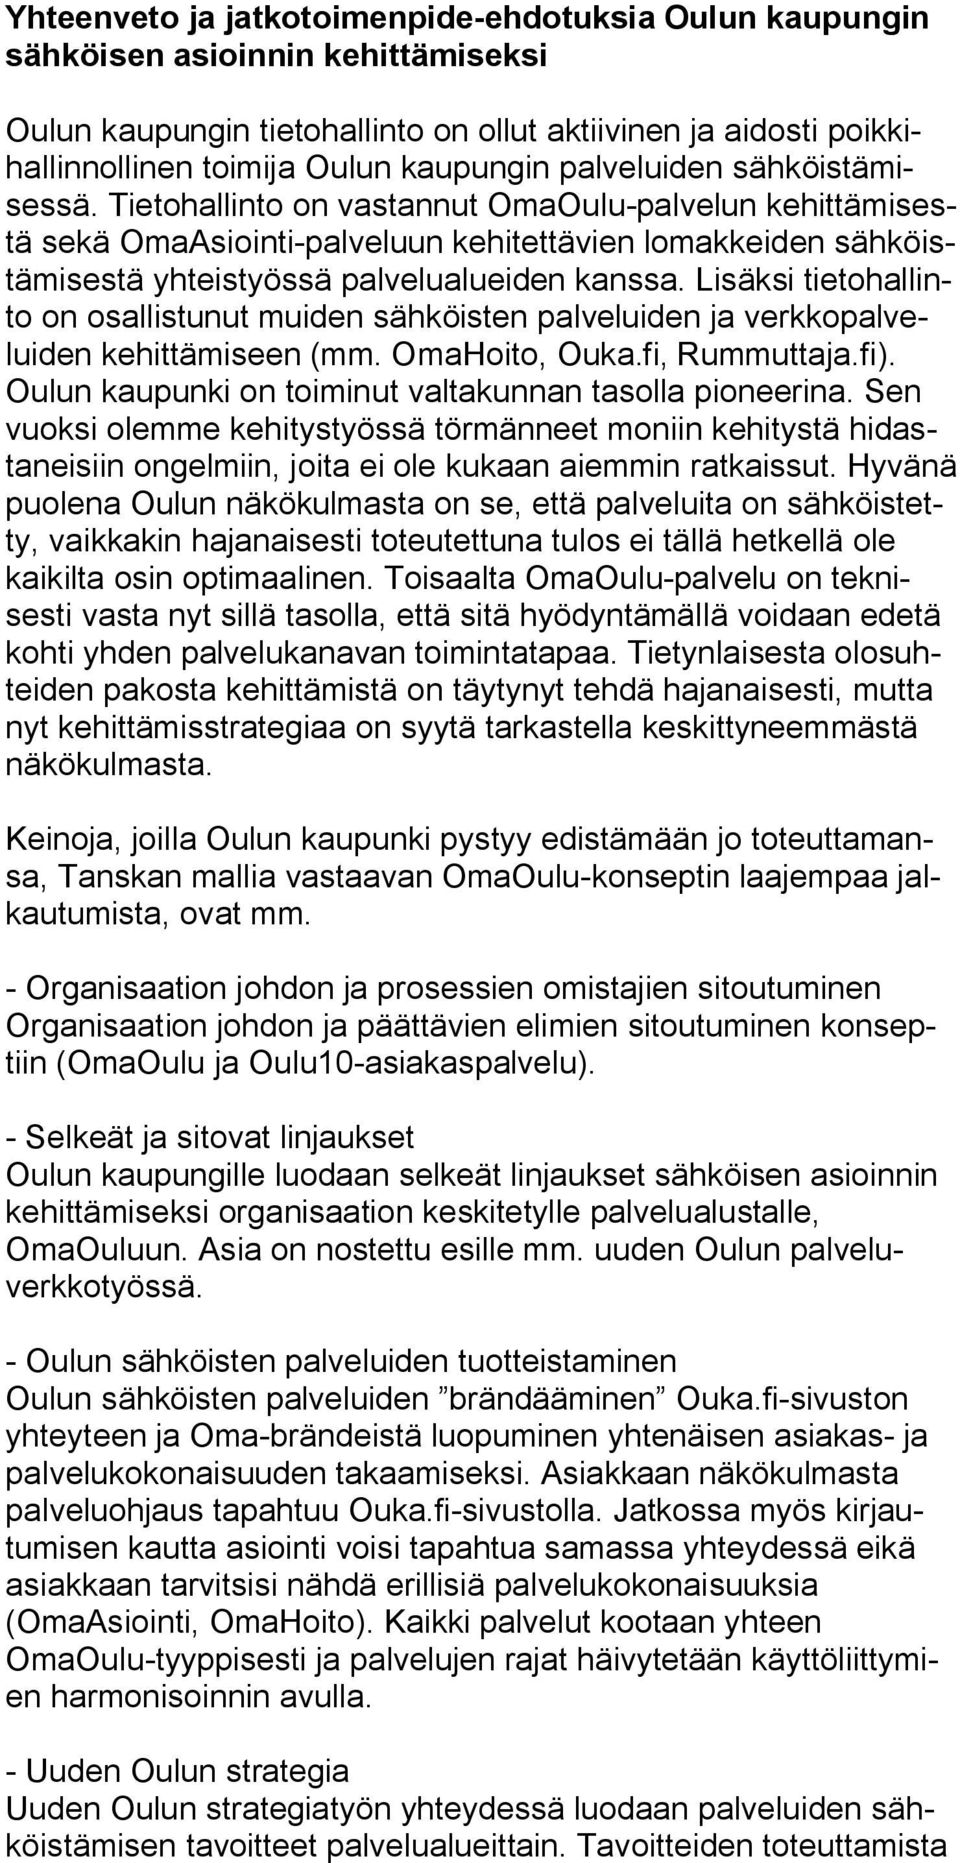 Lisäksi tietohallinto on osallistunut muiden sähköisten palveluiden ja verkkopalveluiden kehittämiseen (mm. OmaHoito, Ouka.fi, Rummuttaja.fi).